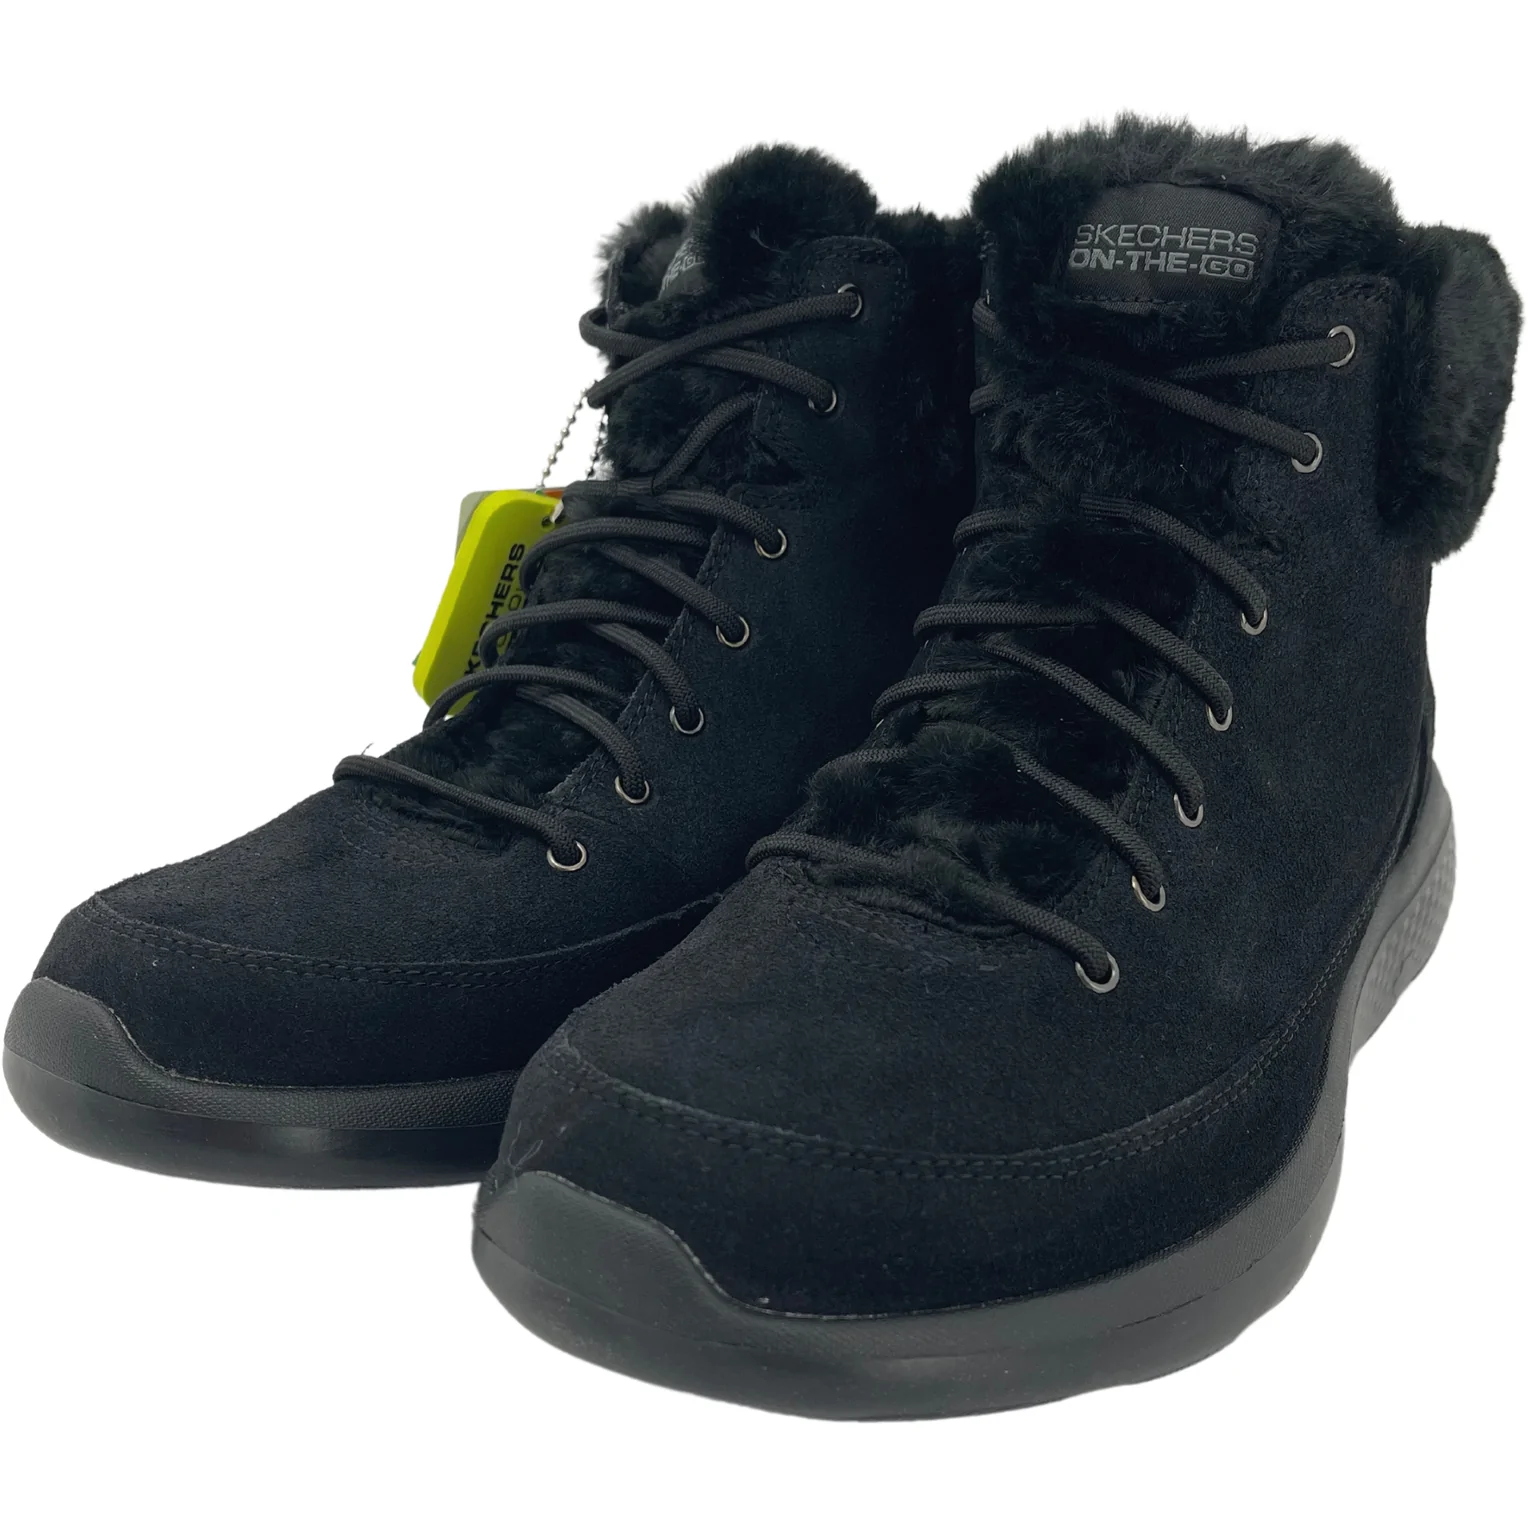 Skechers Women's "Go Walk" Winter Boots / Black / Size 11 / Wide Fit